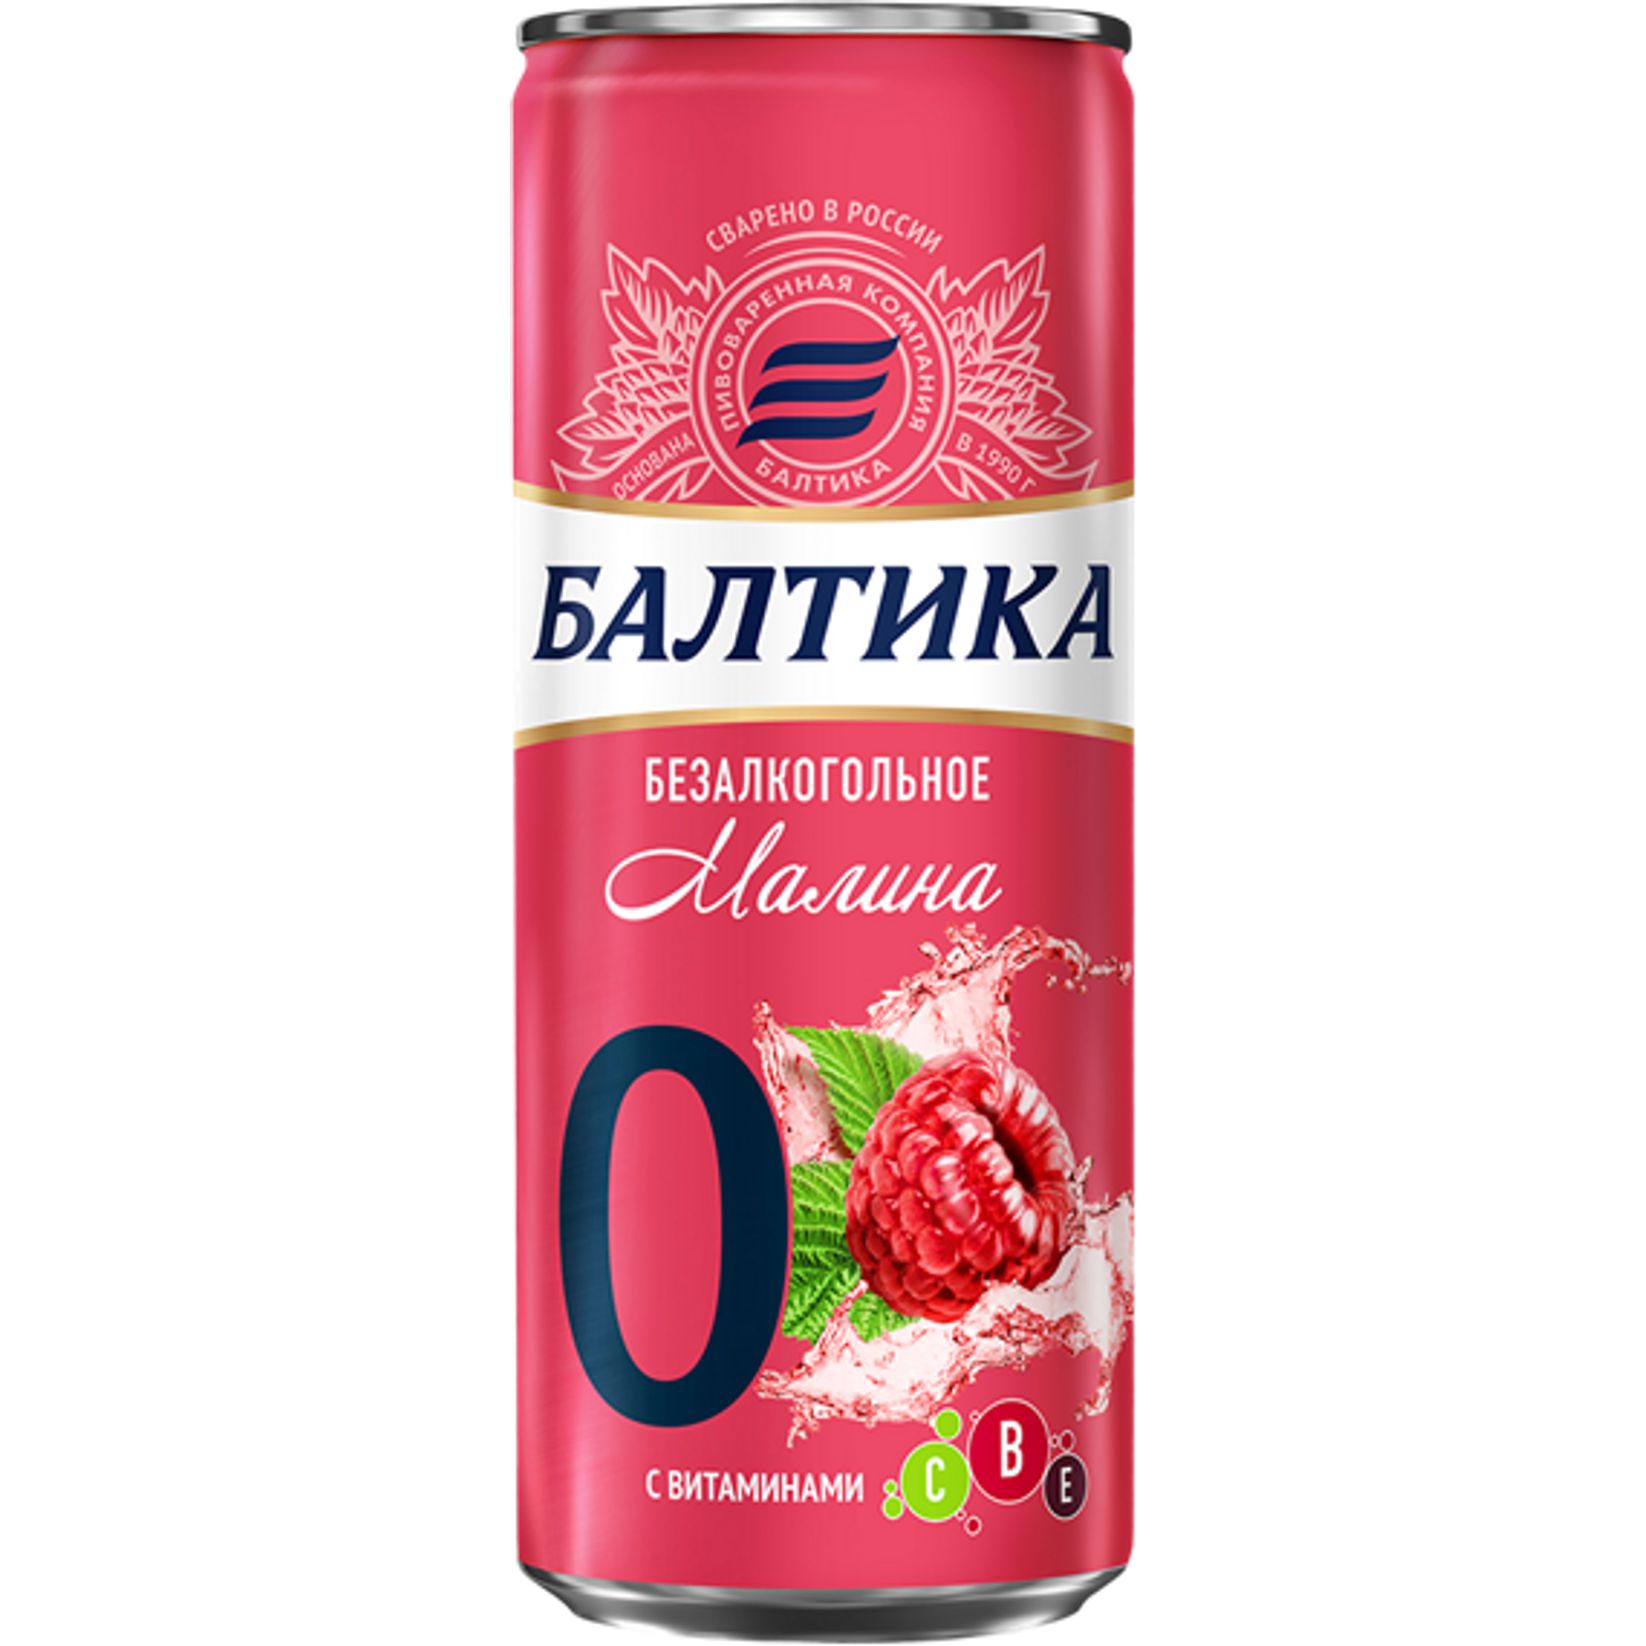 Напиток пивной Балтика №0 безалкогольный, фильтрованный, малина, 450 мл